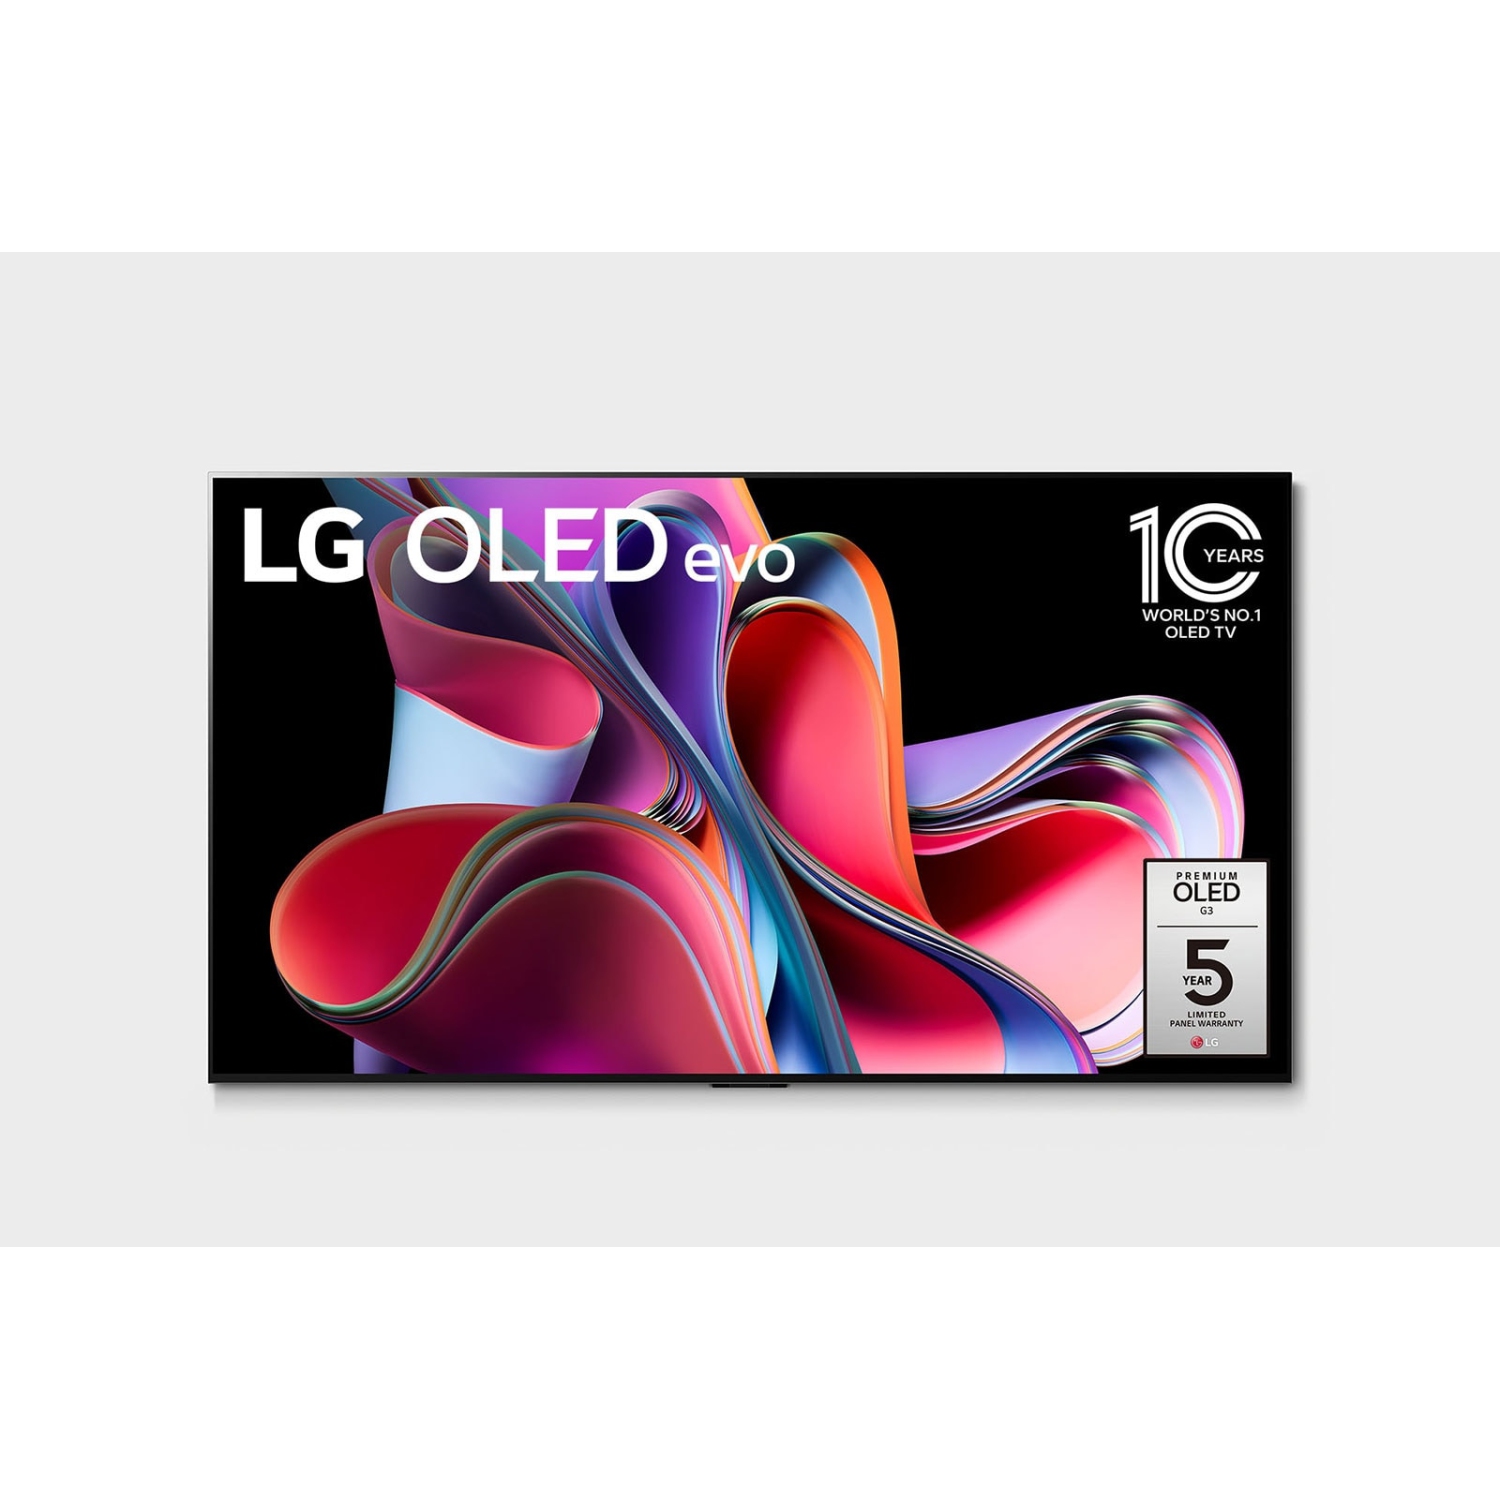 LG 55-inch OLED 4K Smart TV OLED55G3PUA Open Box 10/10